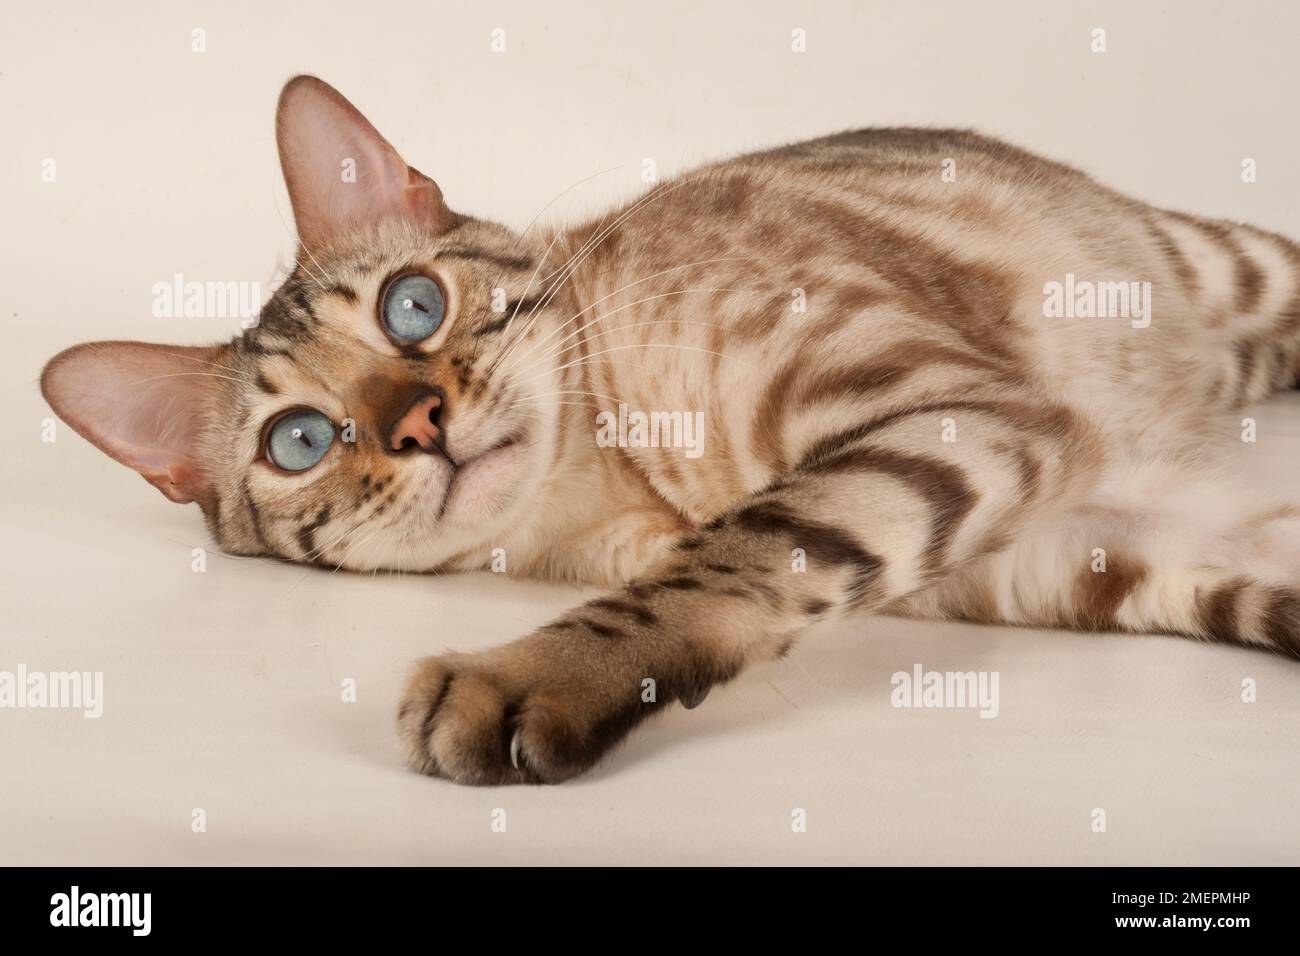 Braune bengalische Katze mit blauen Augen, die sich hinlegte und in die Kamera schaute Stockfoto